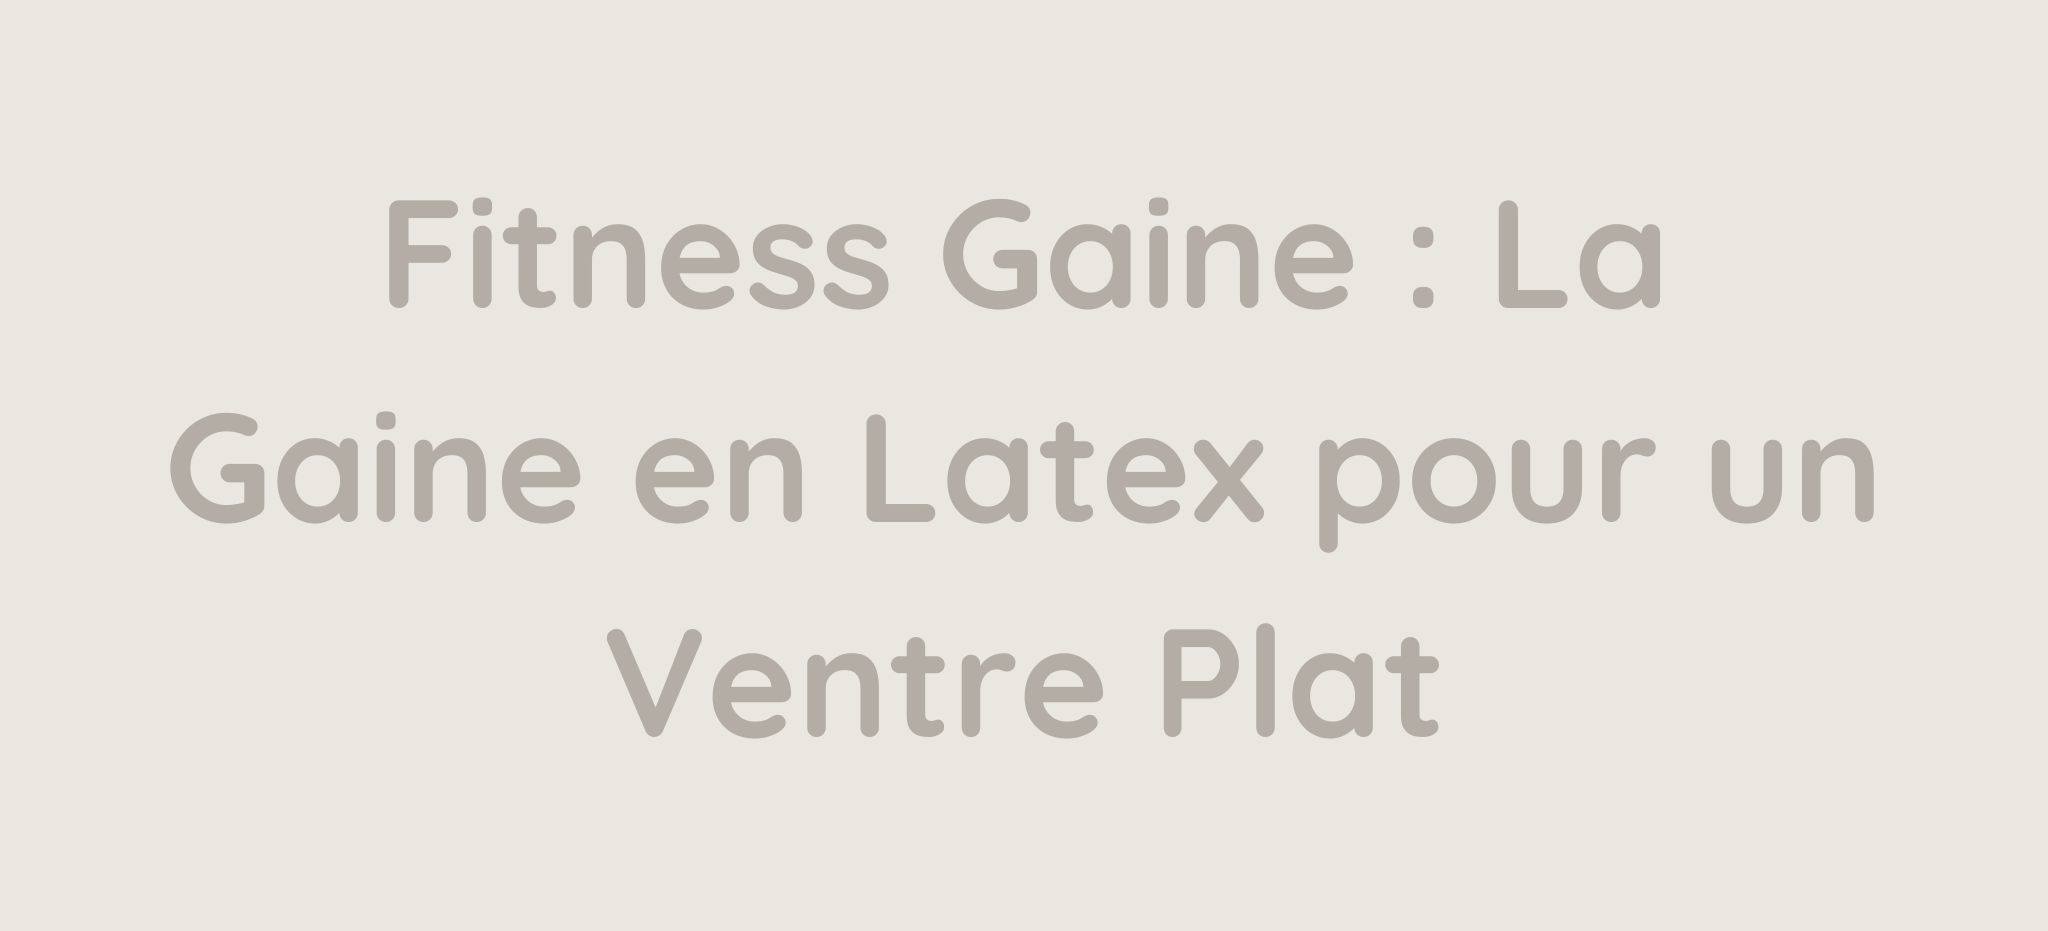 Fitness Gaine La Gaine en Latex pour un Ventre Plat